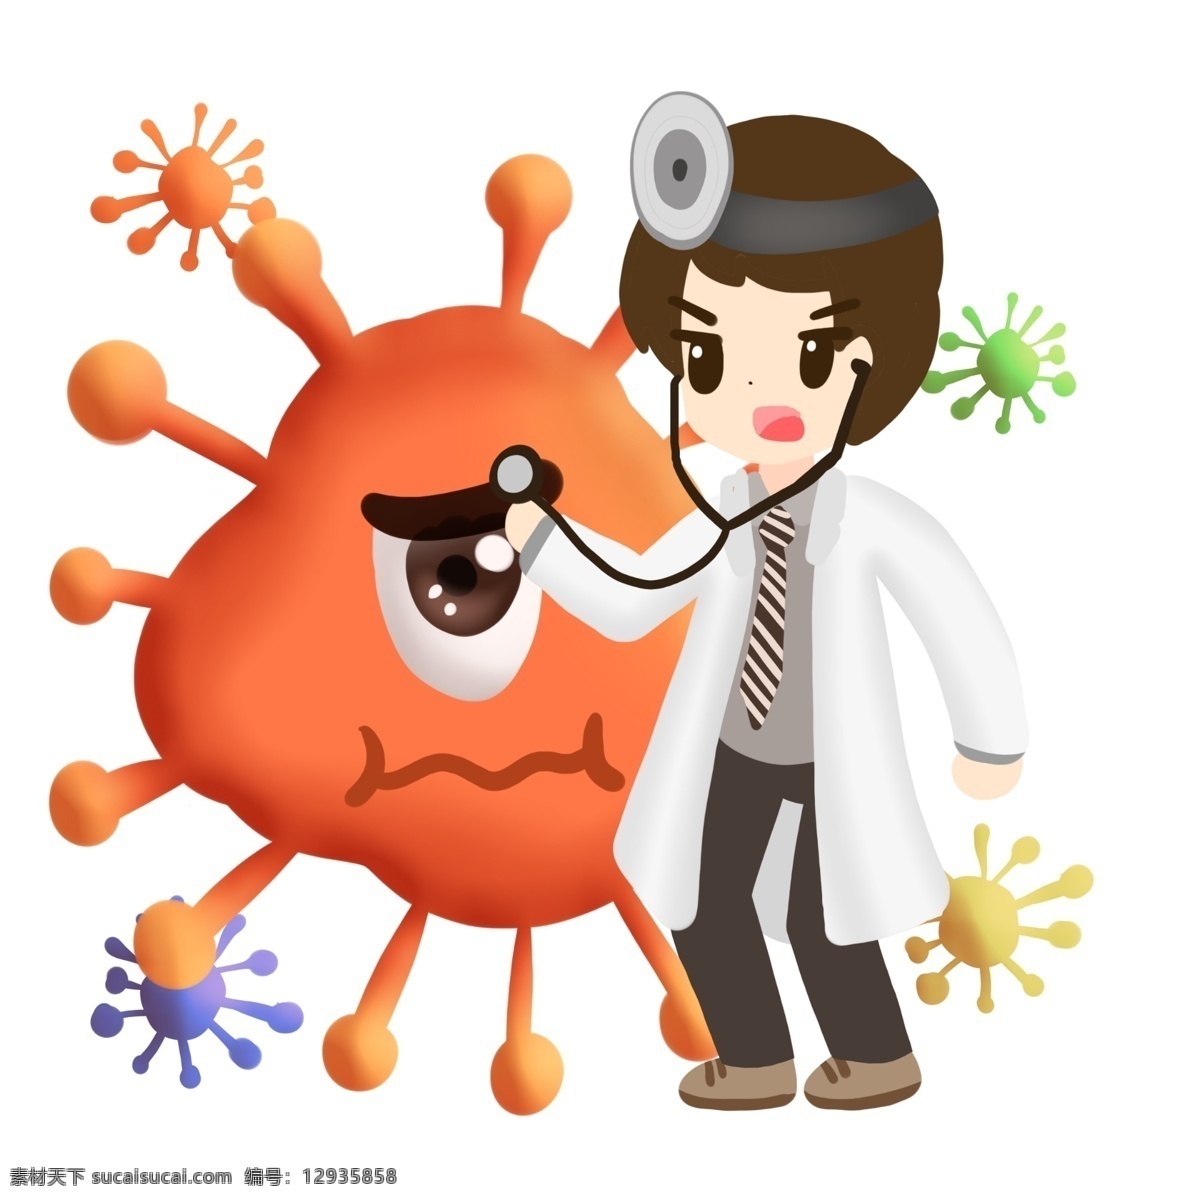 医生 医疗 橙色 病毒 细菌 卡通 听诊器 治疗 制服 医学 生物 害怕 冷笑 疾病 生病 菌体 菌状 细胞